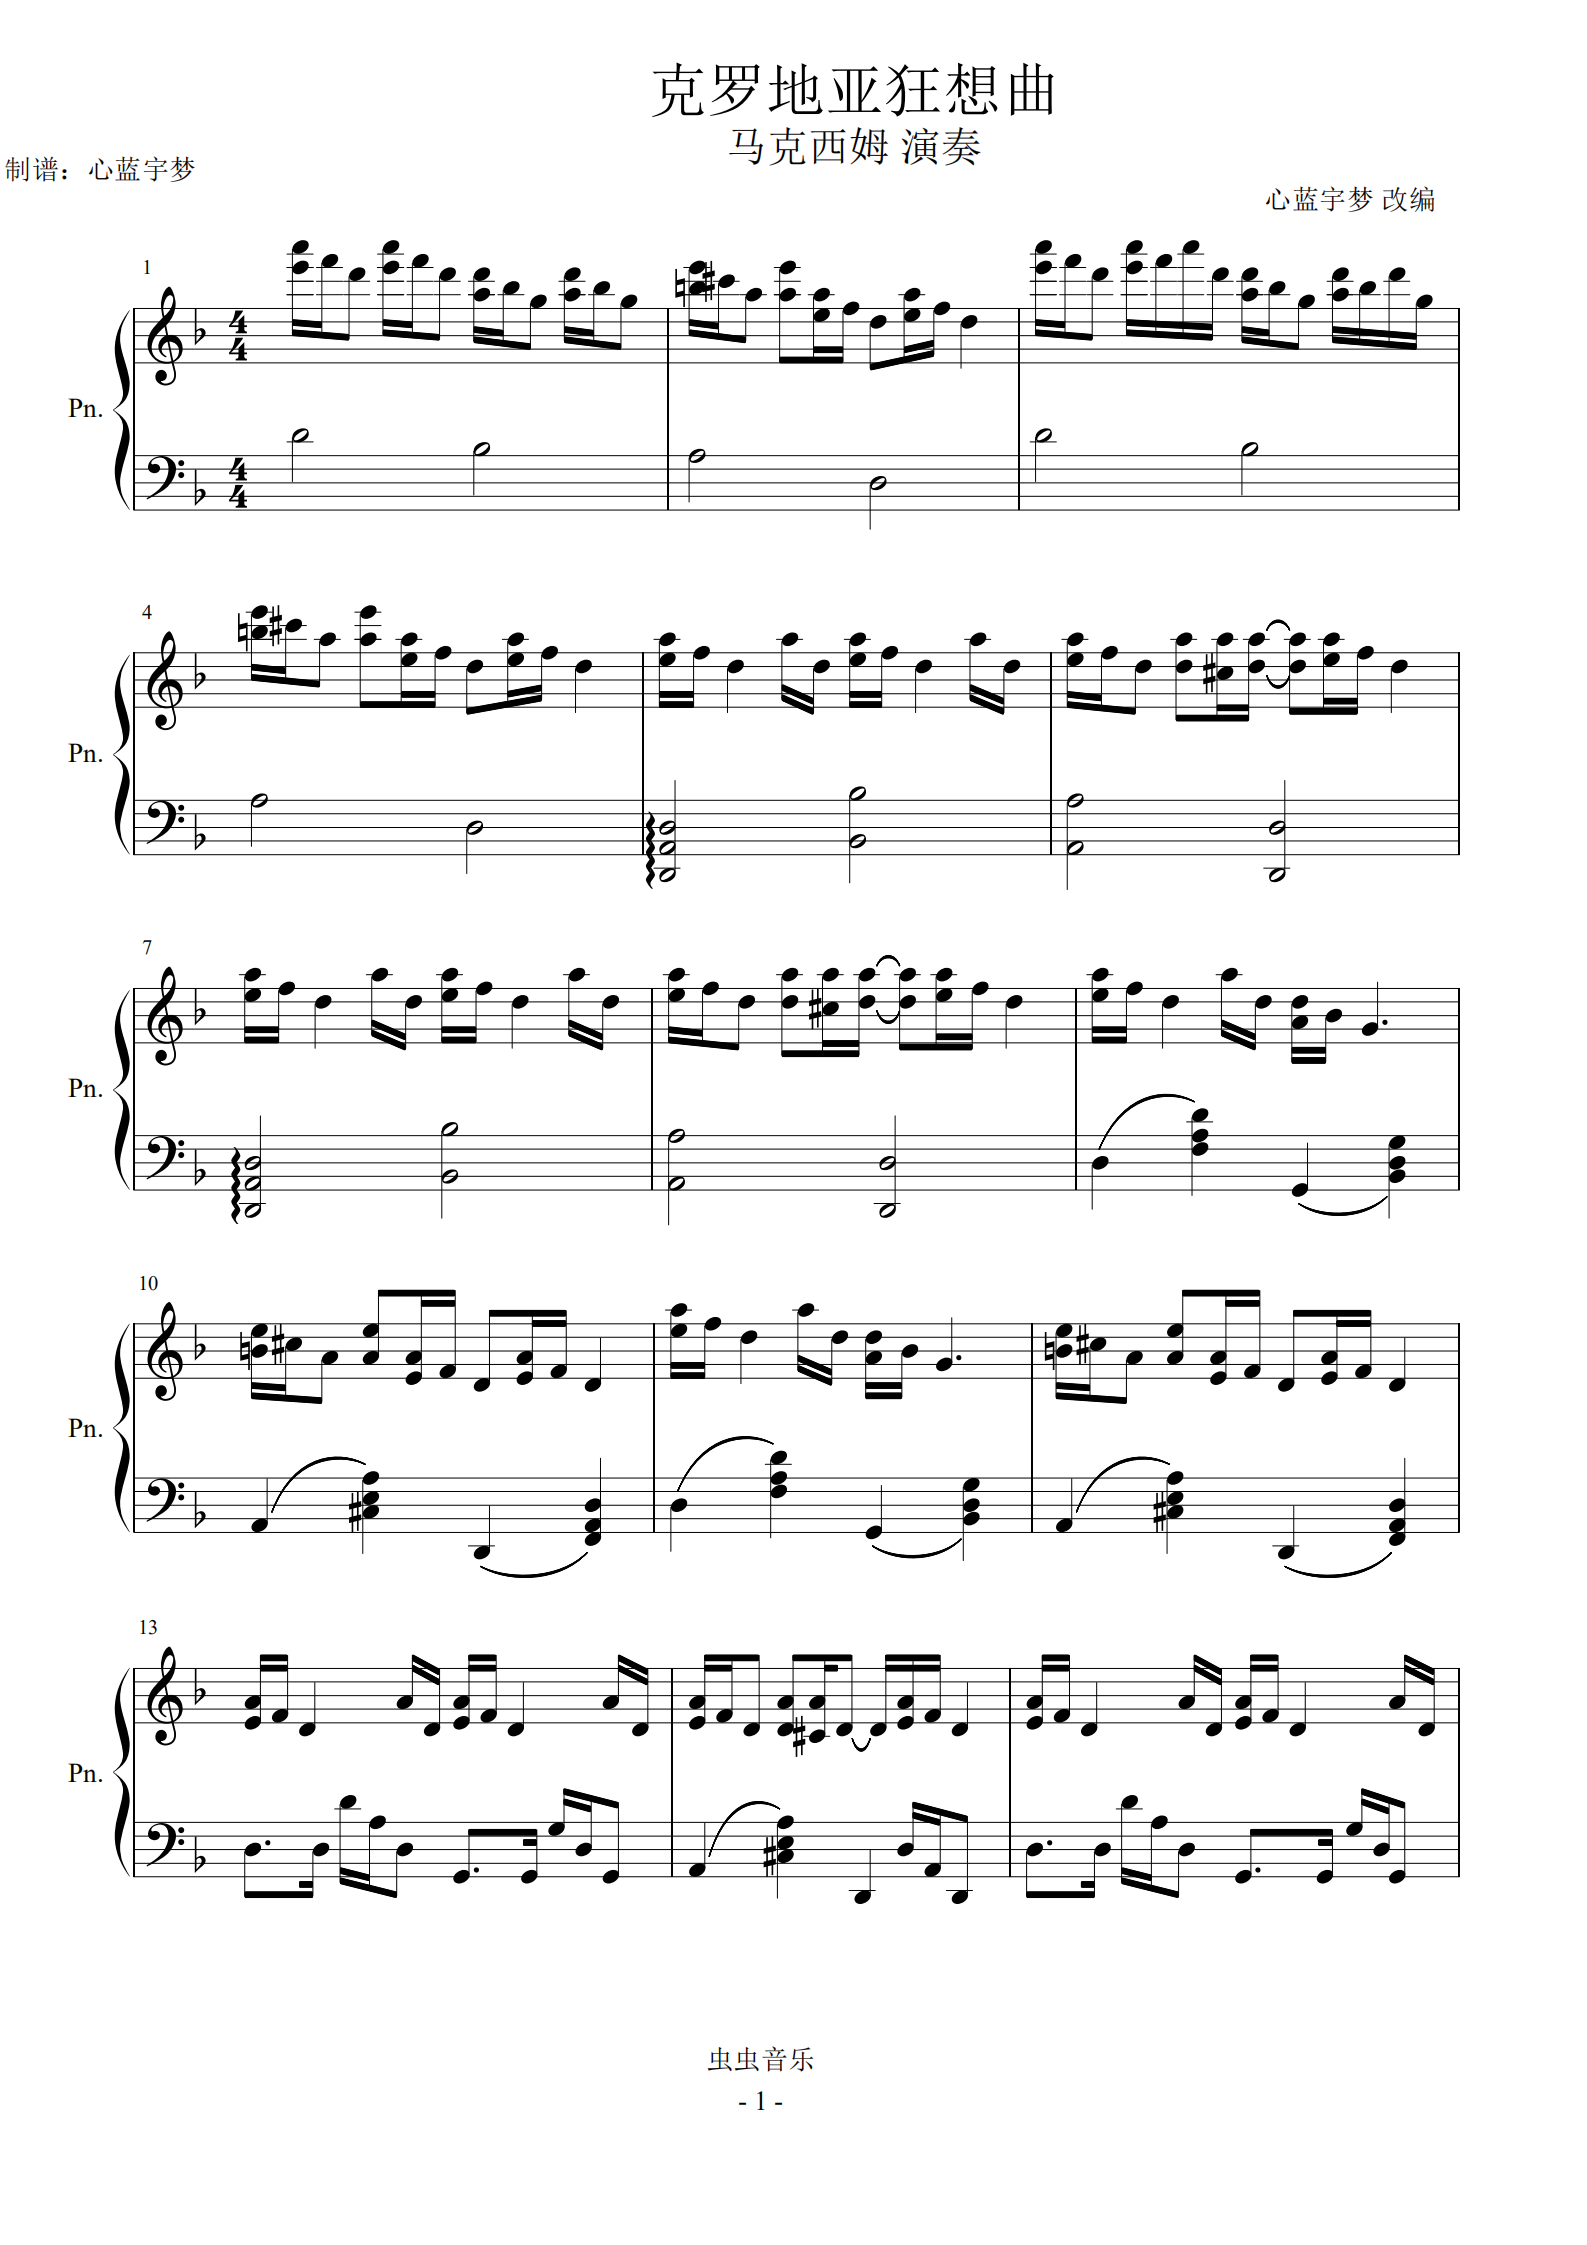 克罗地亚狂想曲钢琴曲谱带指法(克罗地亚狂想曲钢琴谱完整版指法)